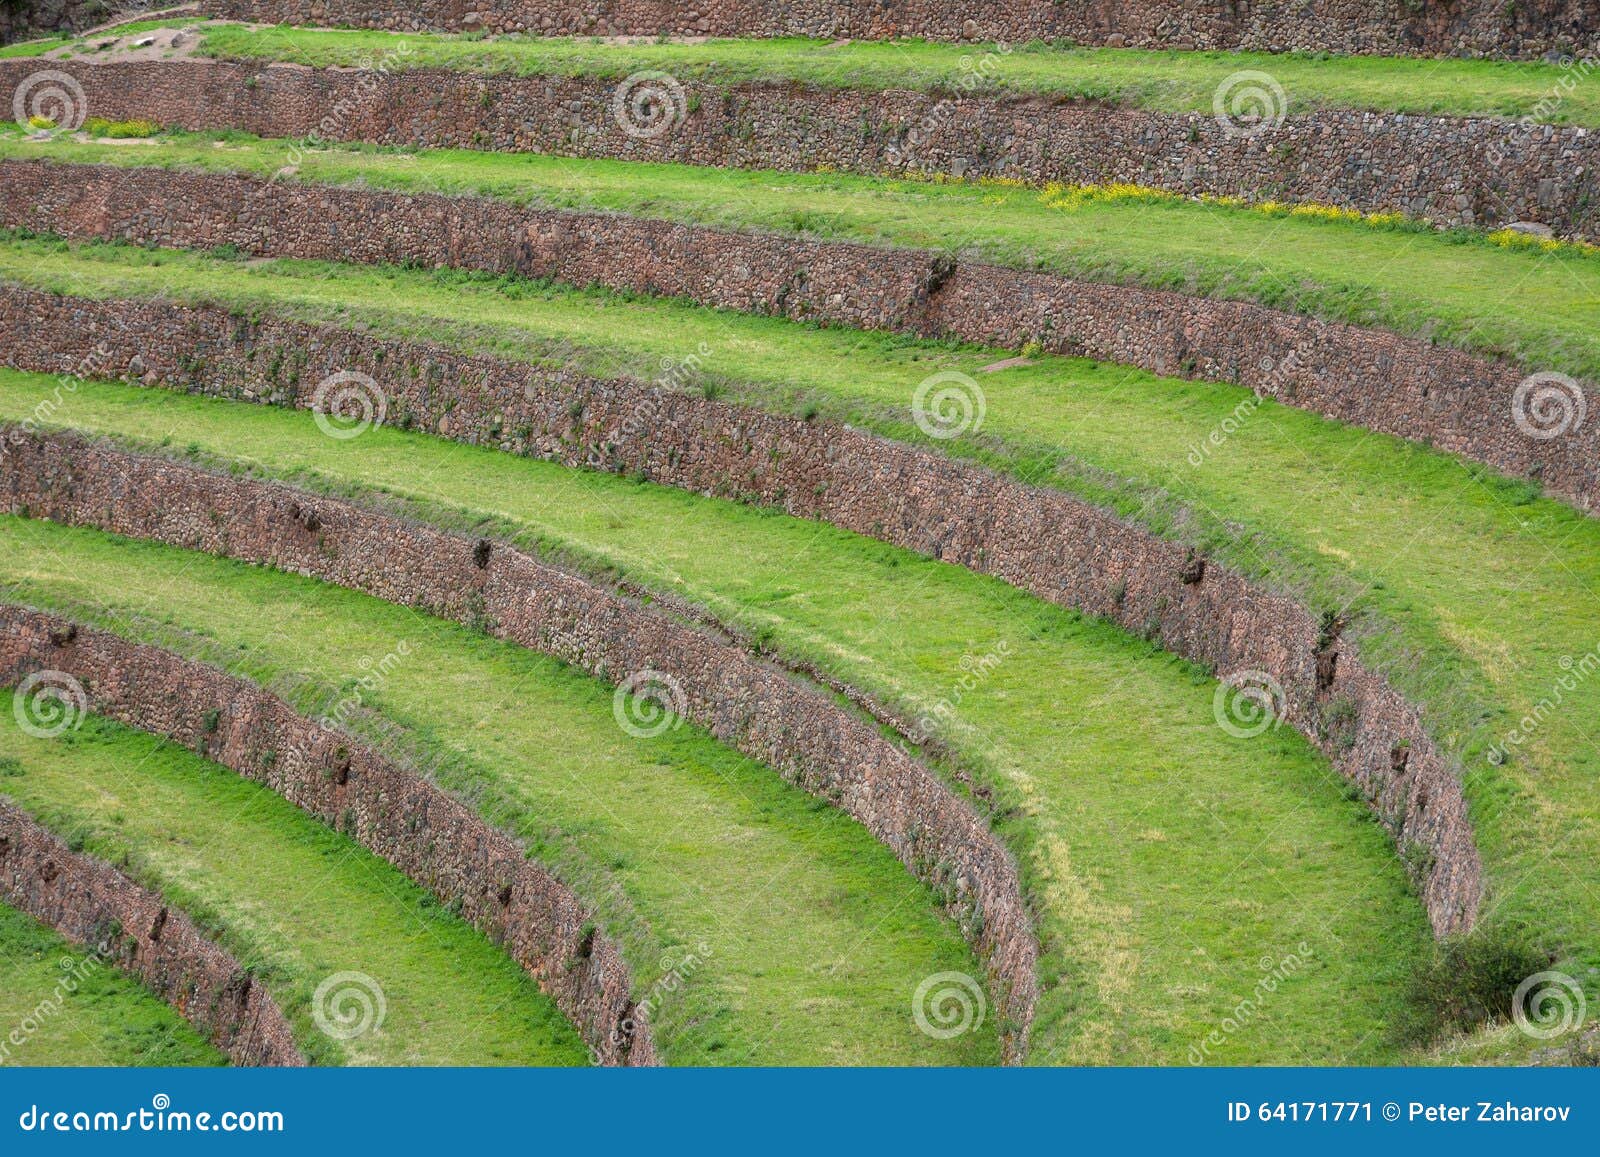 terraced fields in the inca archeological area of pisac, peru.